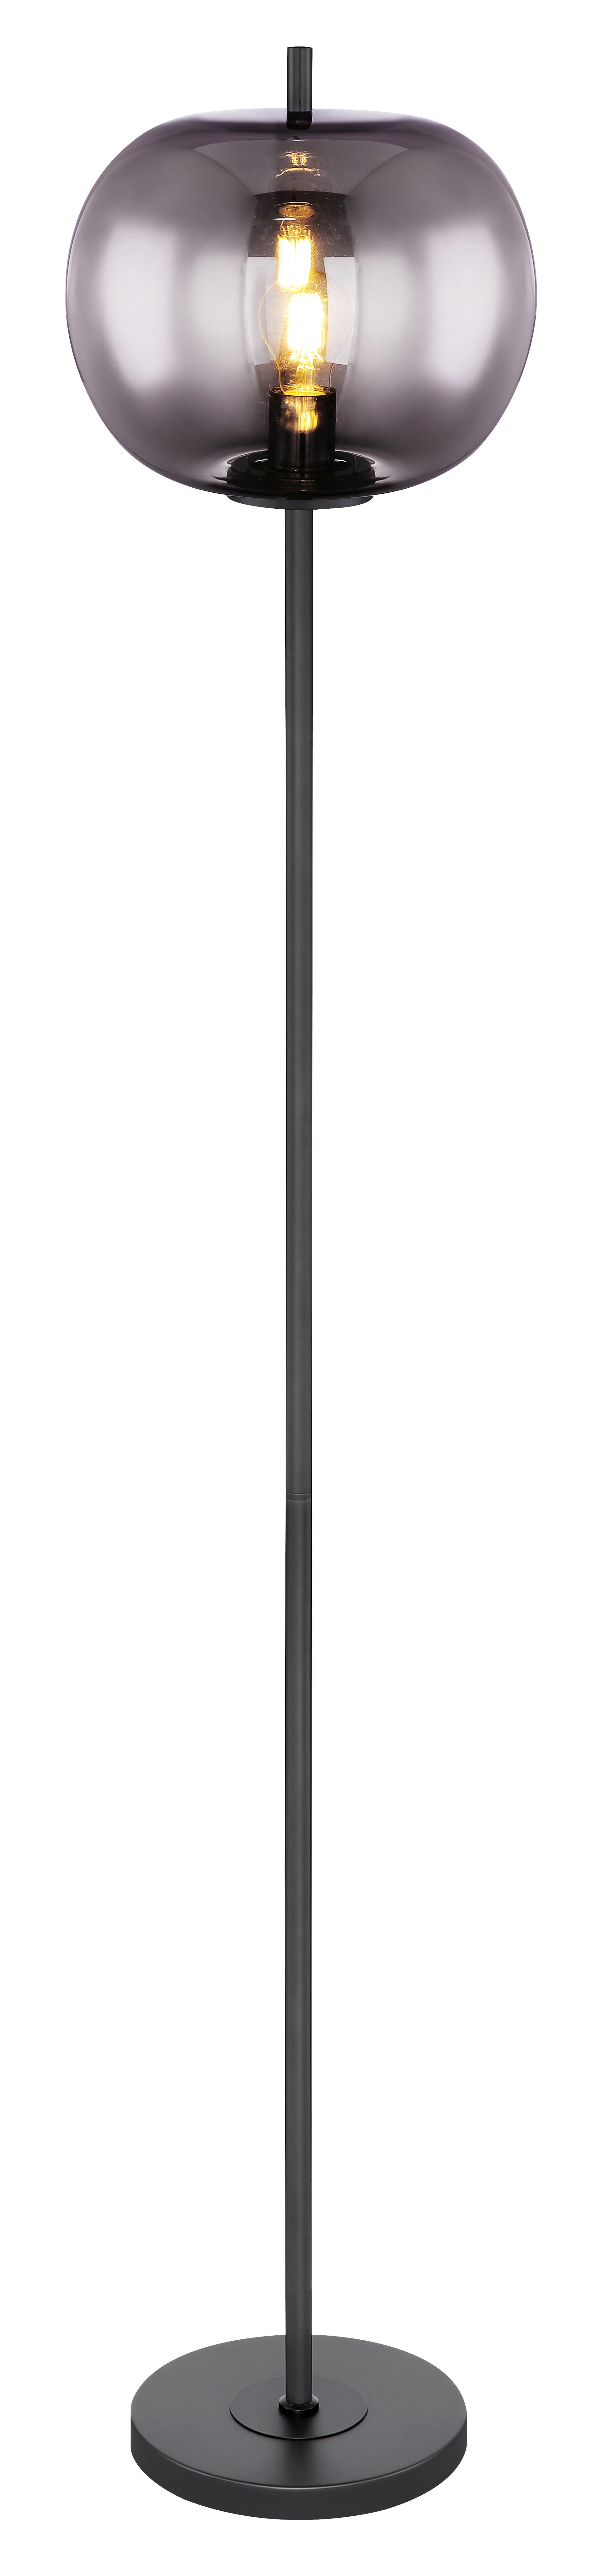 GLOBO Retrofit Stehlampe BLACKY 160 cm schwarz /rauchfarbig